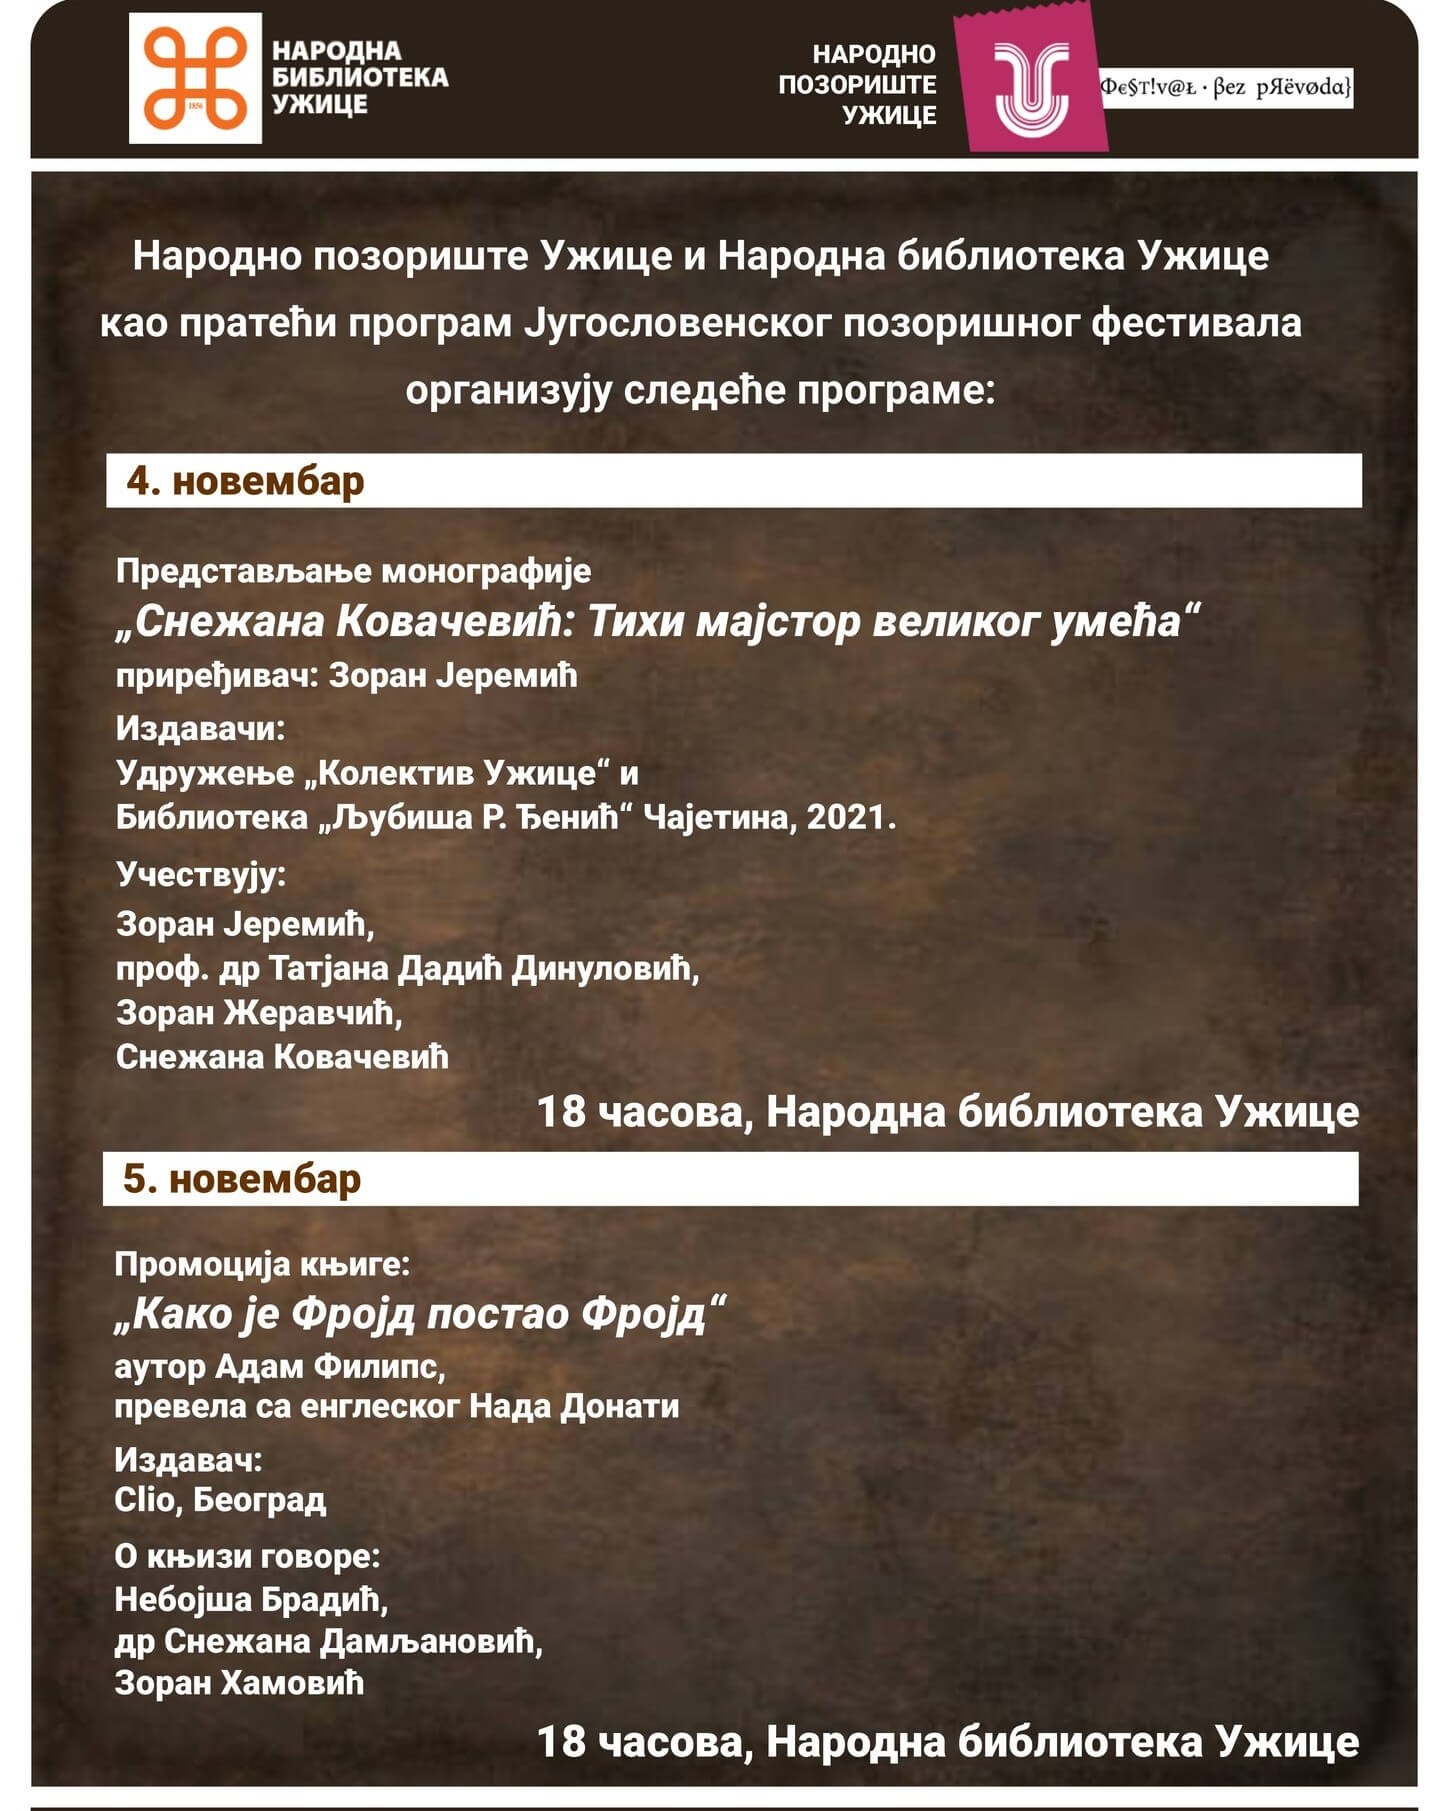 Пратећи програм Југословенског позоришног фестивала